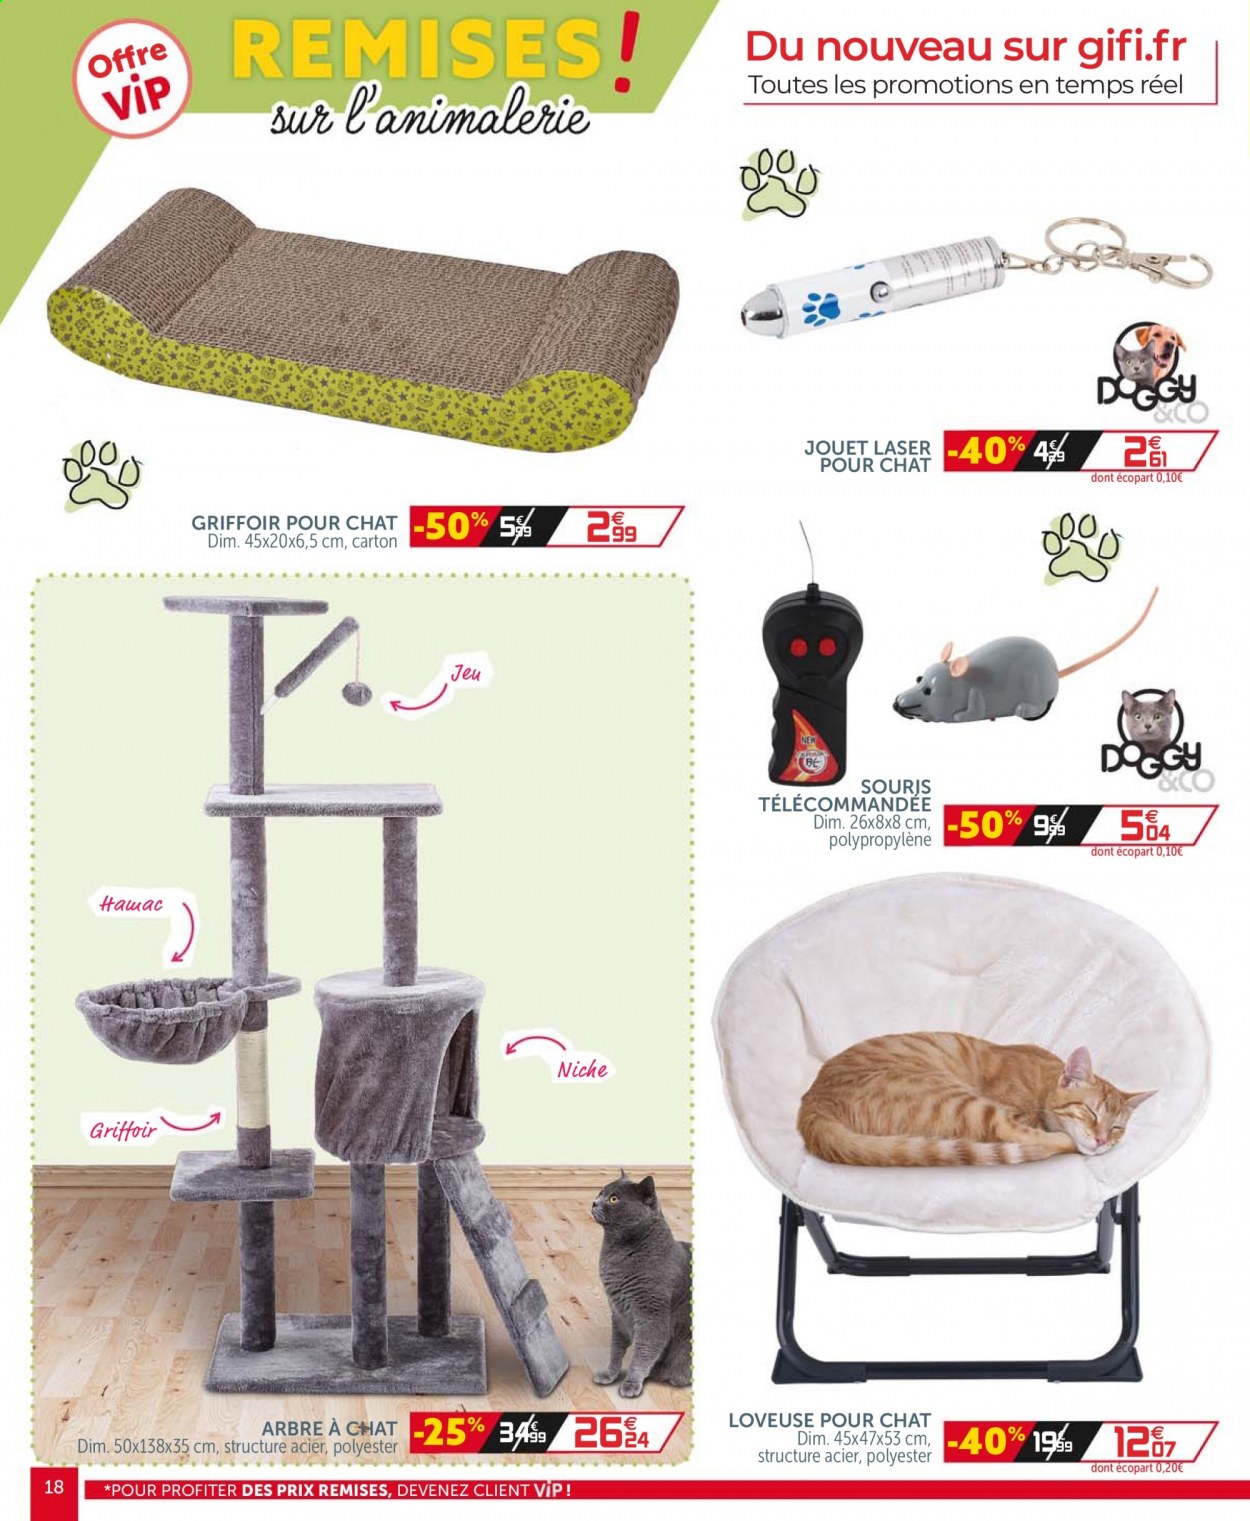 thumbnail - Catalogue GiFi - Produits soldés - jeu, griffoir, arbre à chat. Page 18.